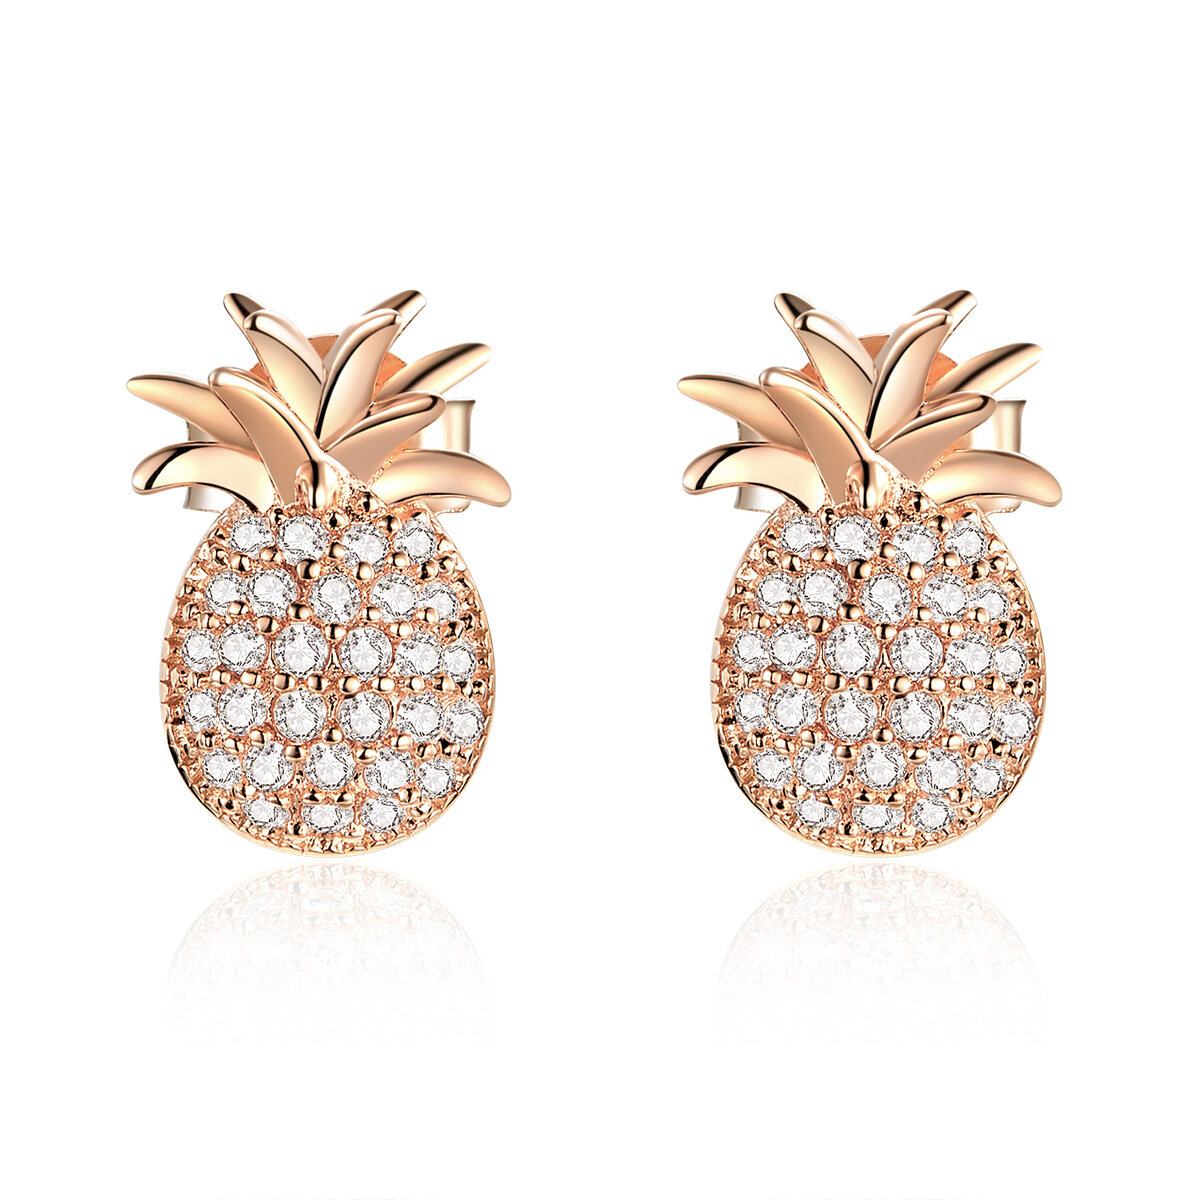 GemKing SCE803 Pineapple earrings S925 Sterling Silver Earring